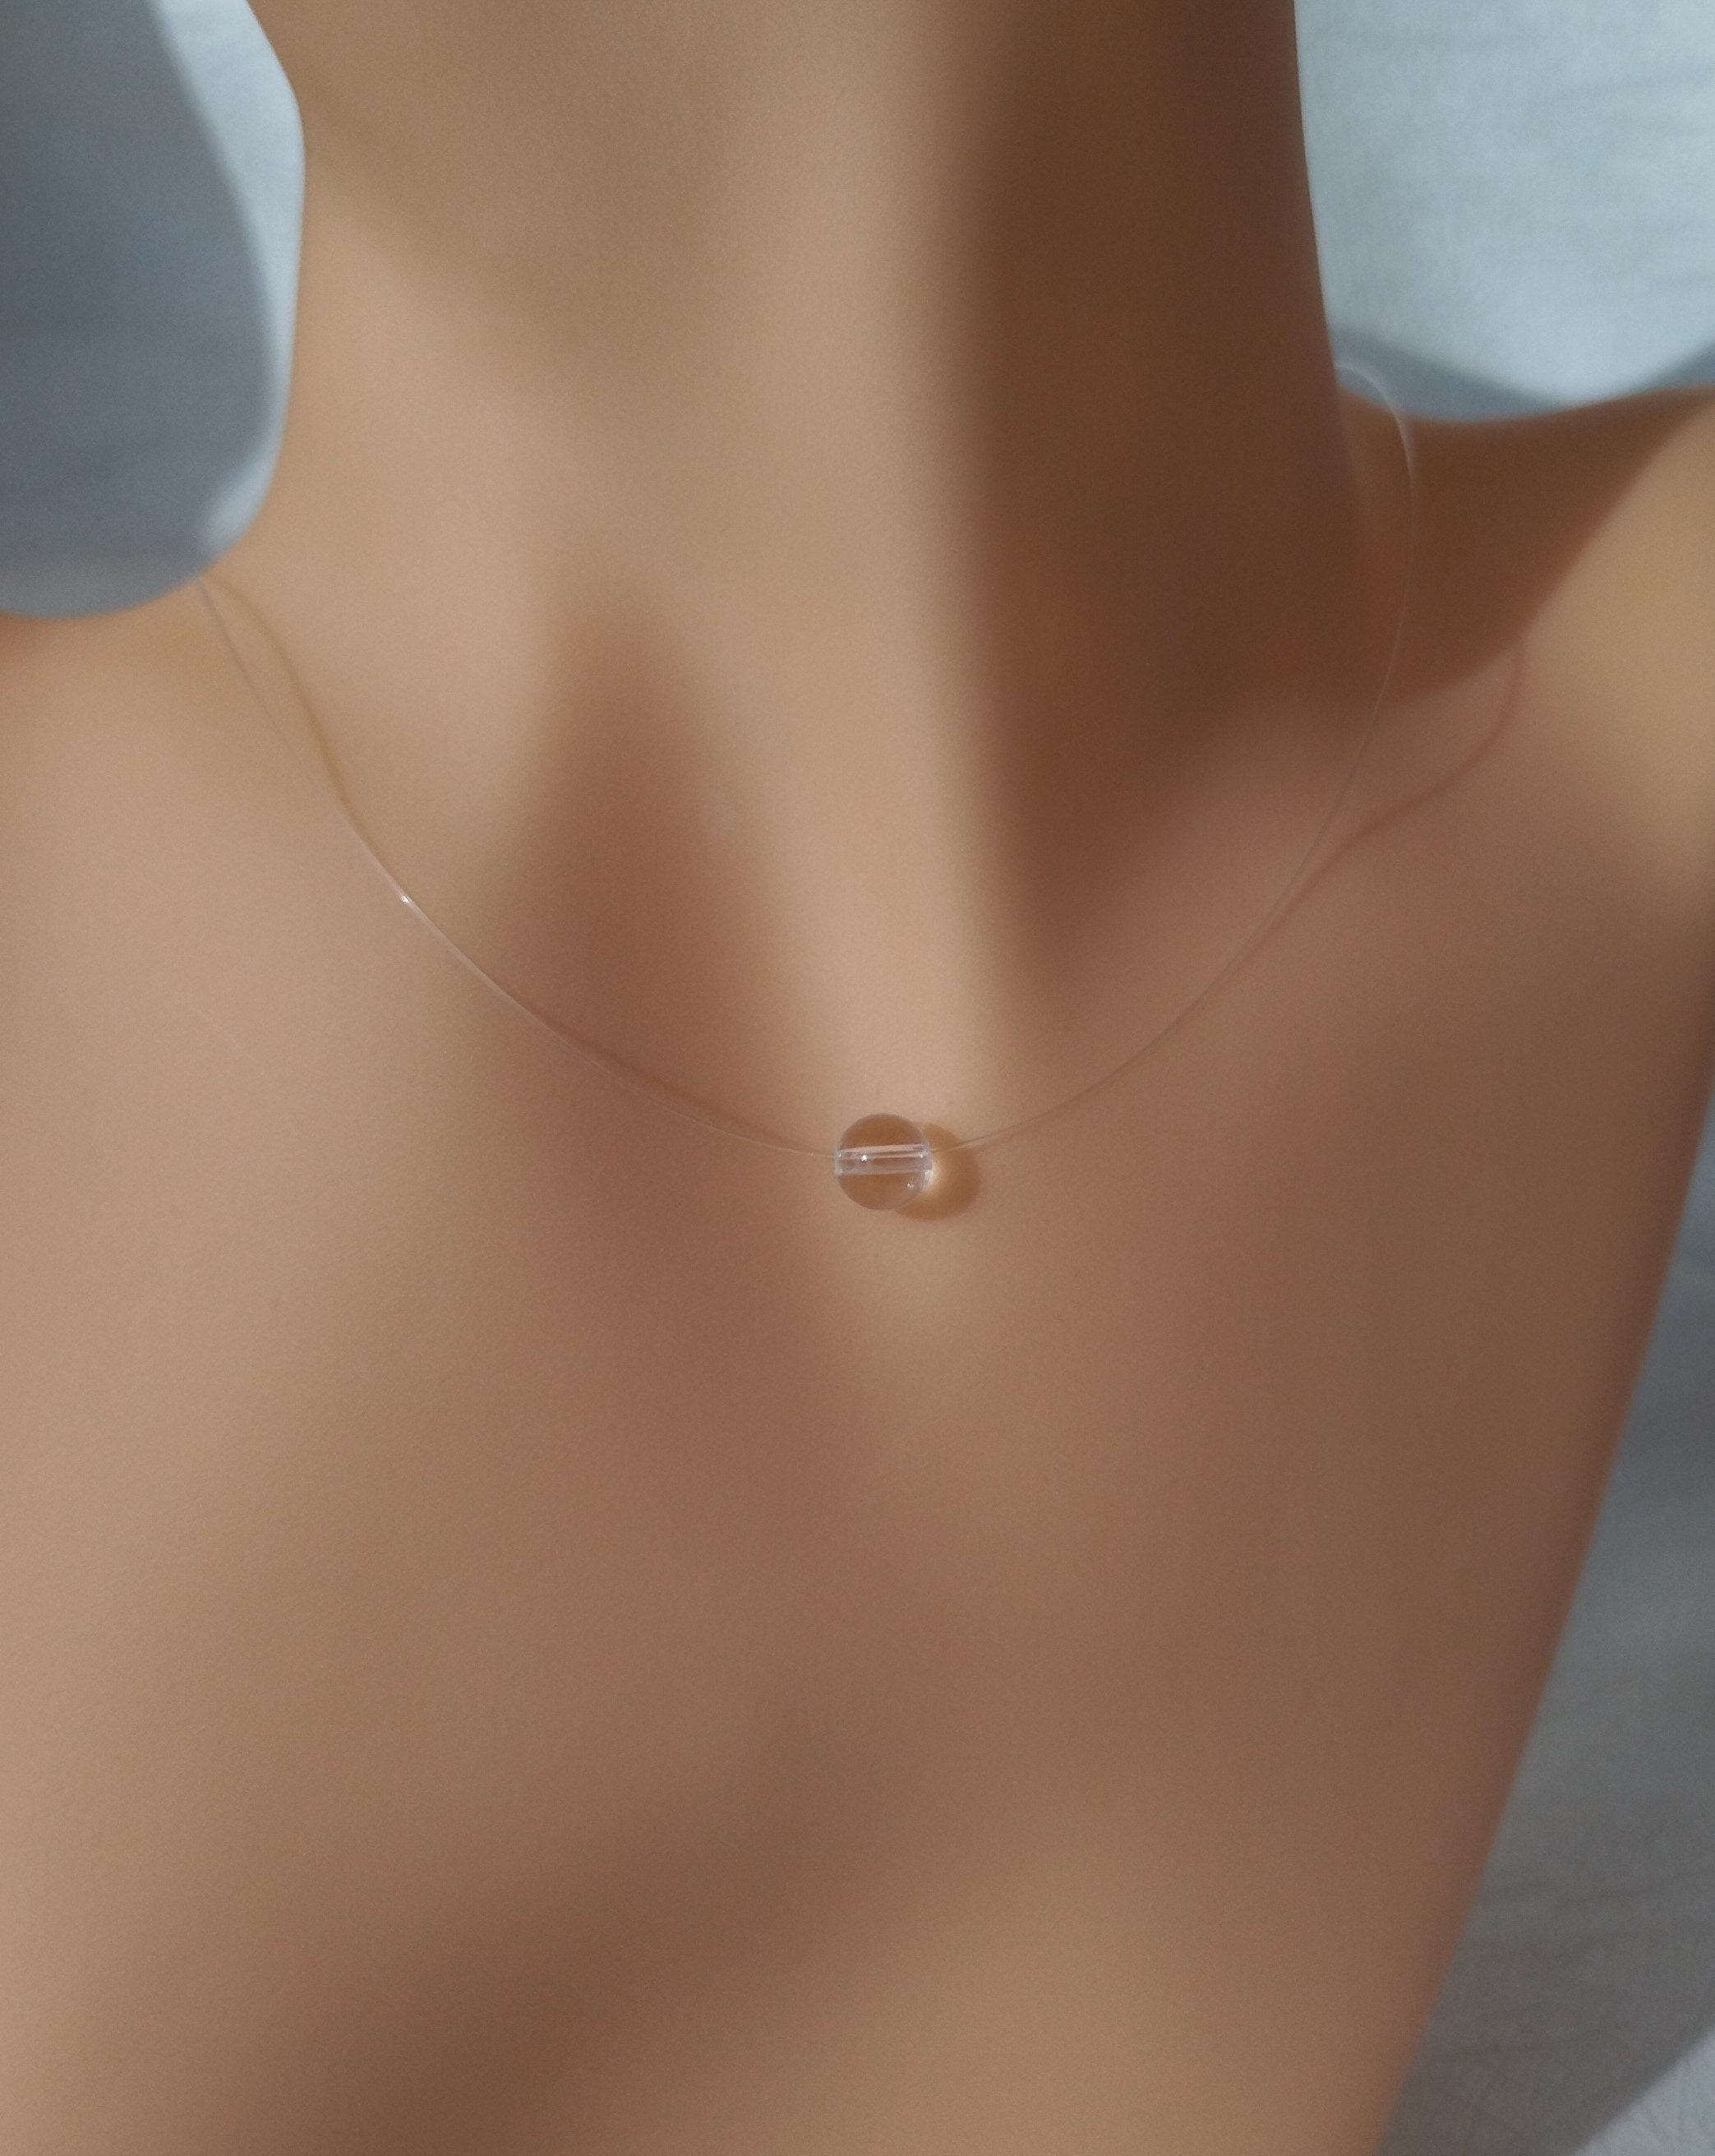 COLLIER perle de 10mm nacrée gris clair, fil nylon transparent , 40 cm + 5  cm de chaînette